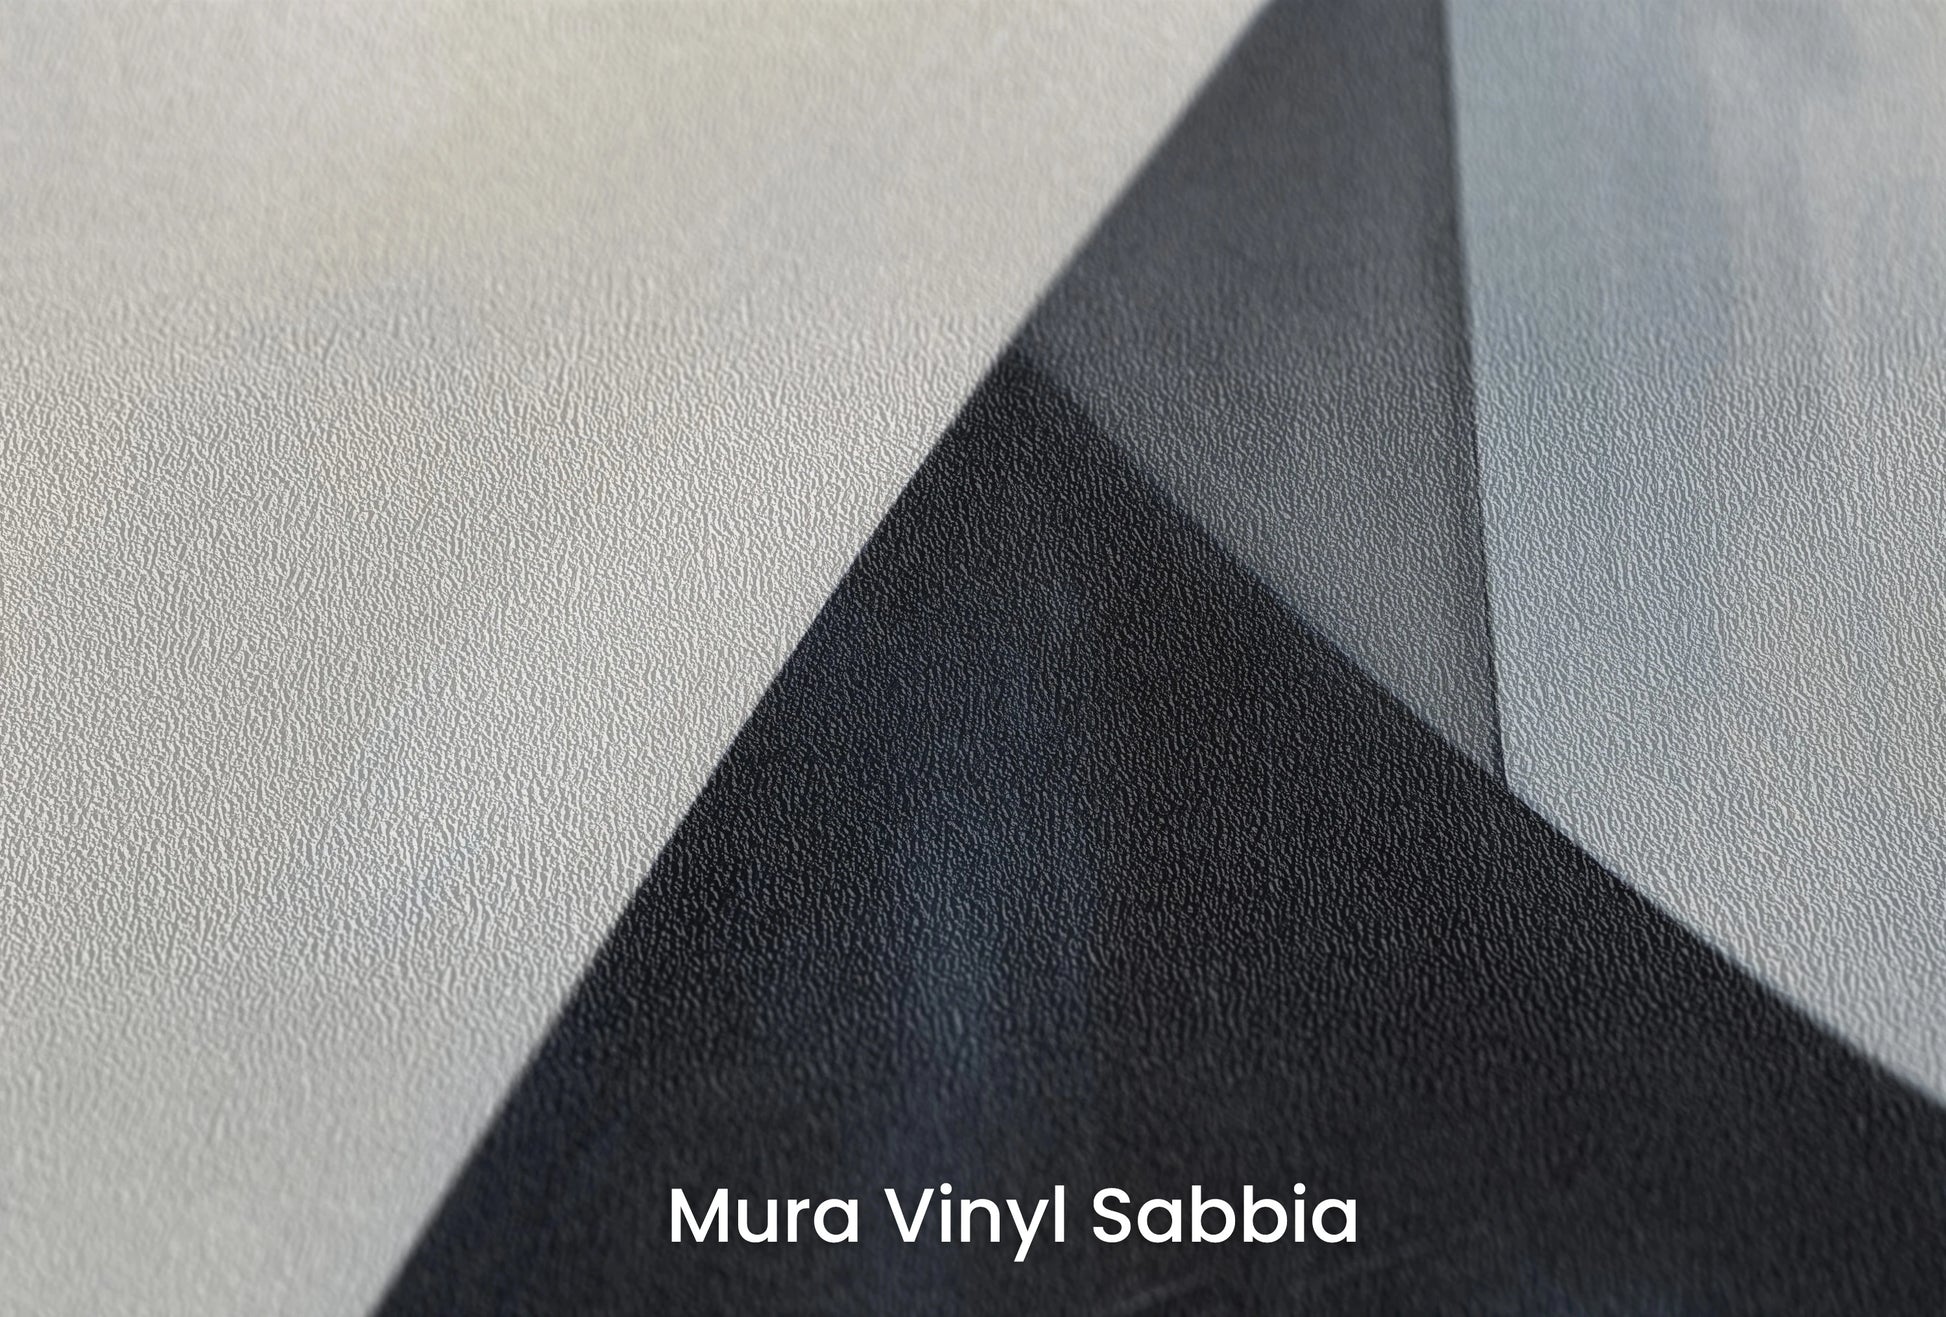 Zbliżenie na artystyczną fototapetę o nazwie Monochrome Triangle na podłożu Mura Vinyl Sabbia struktura grubego ziarna piasku.